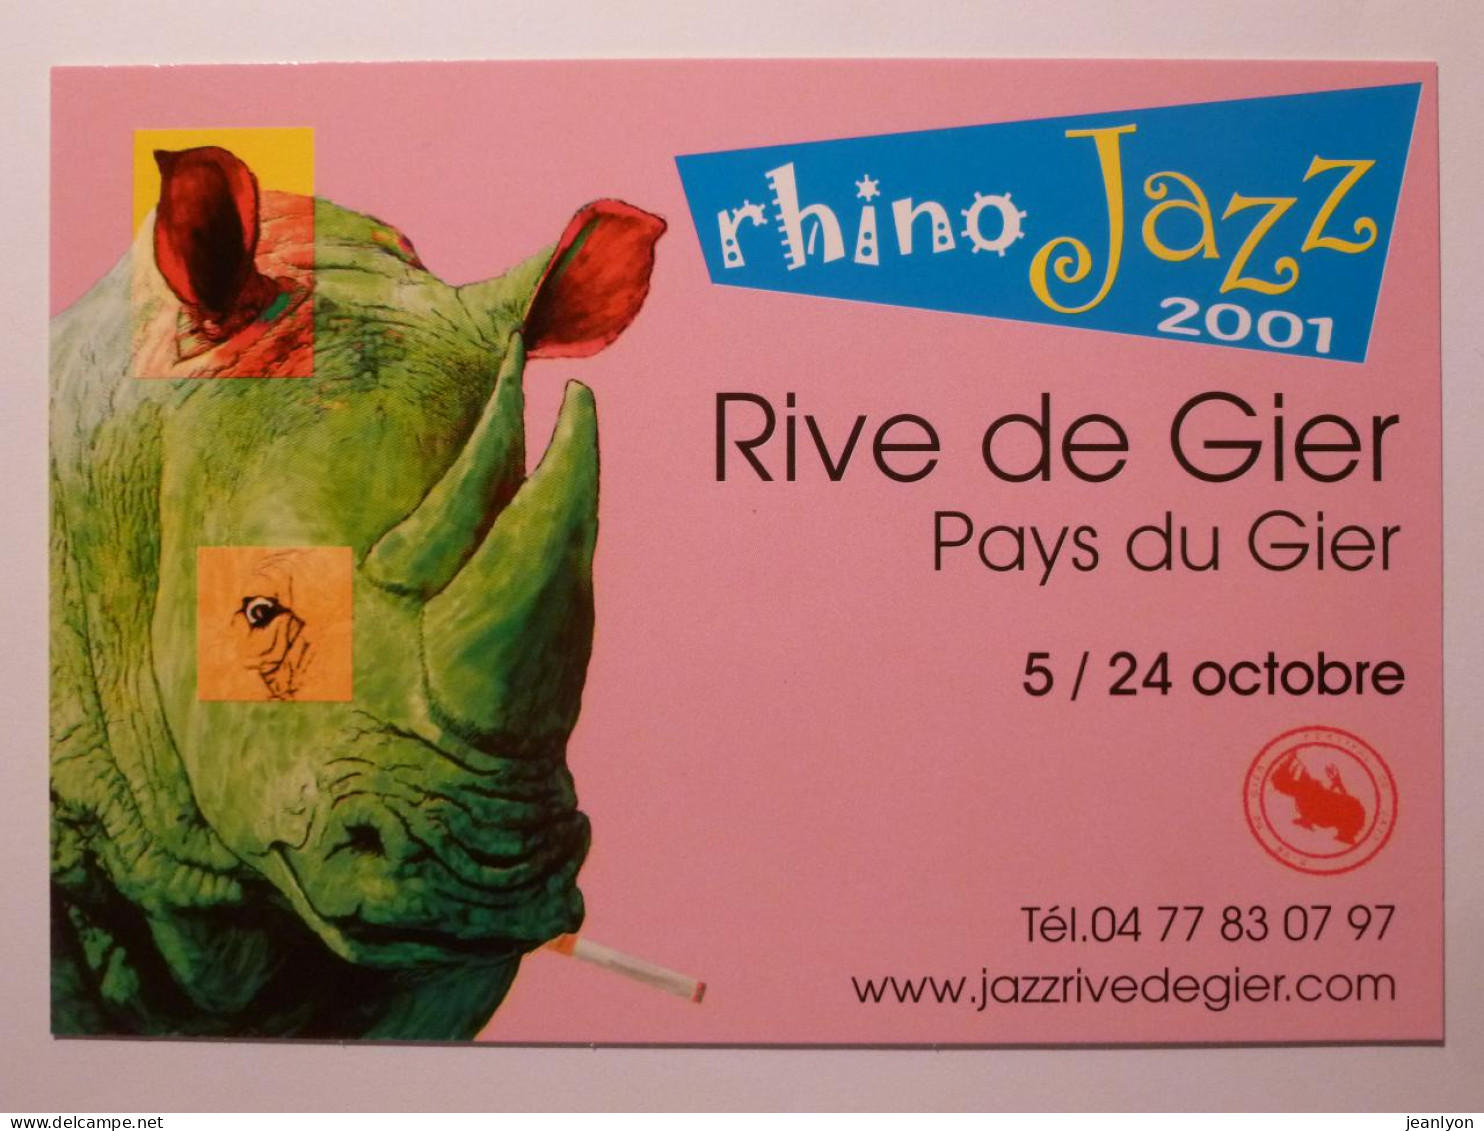 RHINOCEROS VERT Avec Cigarette Dans La Bouche - Rhino Jazz 2001 - Rive De Gier ( Loire ) - Carte Publicitaire - Rhinocéros